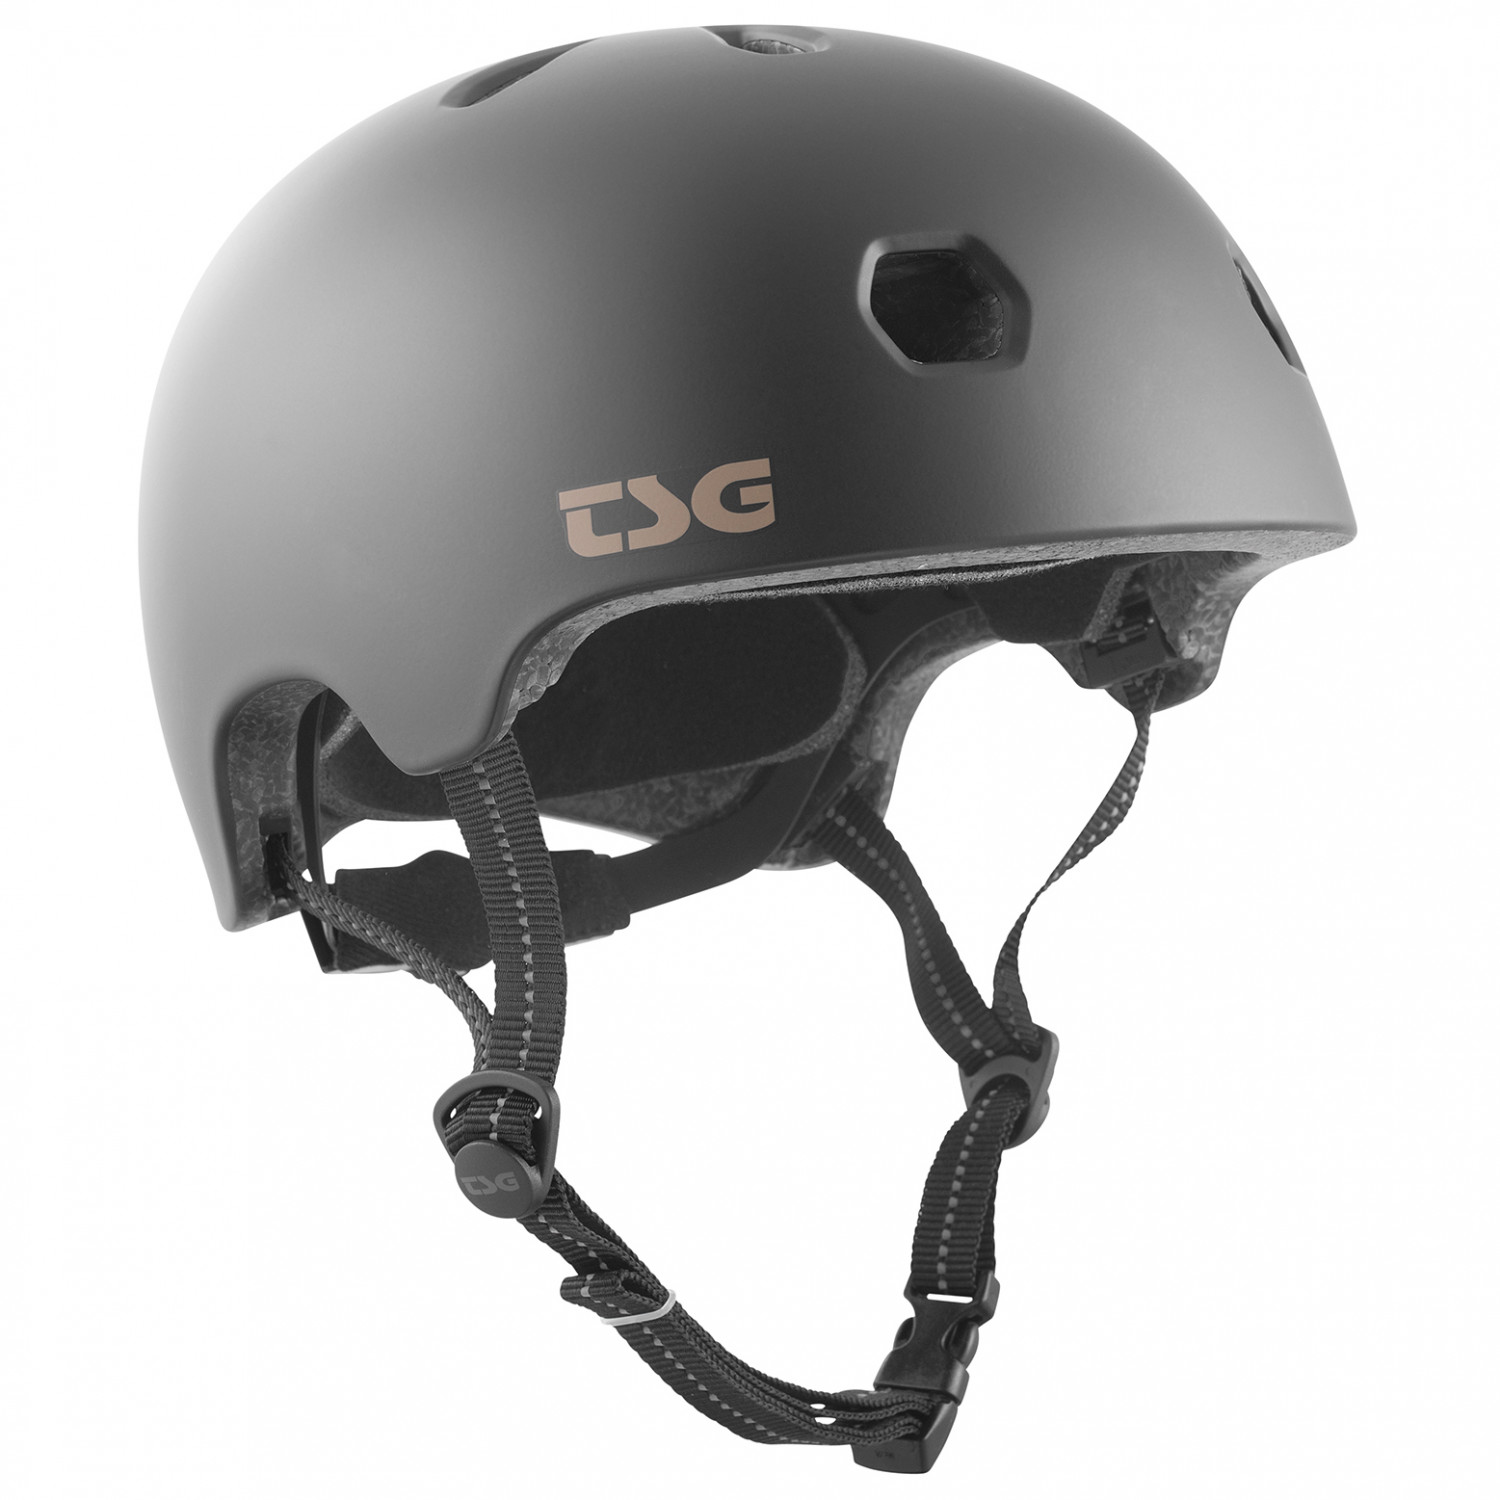 Велосипедный шлем Tsg Meta Solid Color, цвет Satin Black